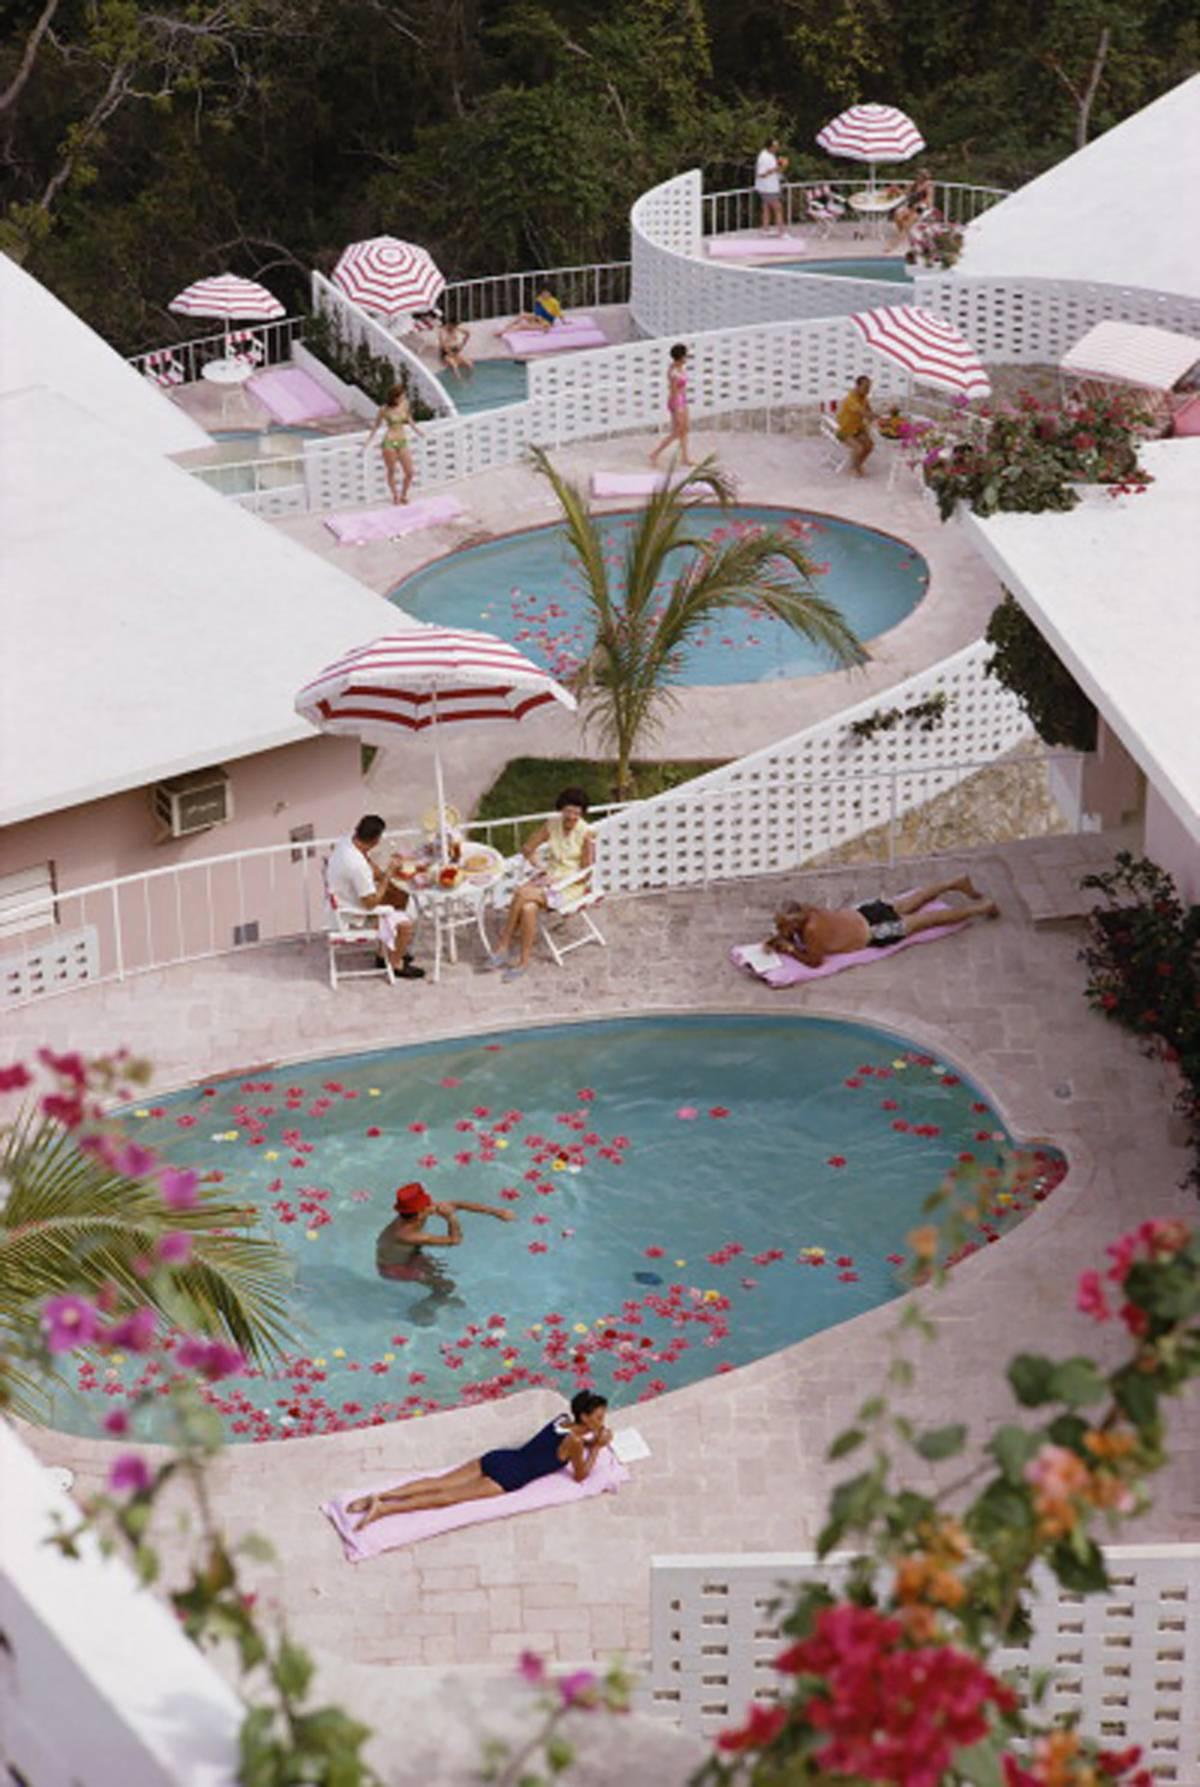 Slim Aarons
Hôtel Las Brisas
1968 (imprimé ultérieurement)
c-impression
Édition de 150 exemplaires numérotés à la main et estampillés par la succession, avec certificat d'authenticité de la succession. 

Appartements et piscines du La Concha Beach